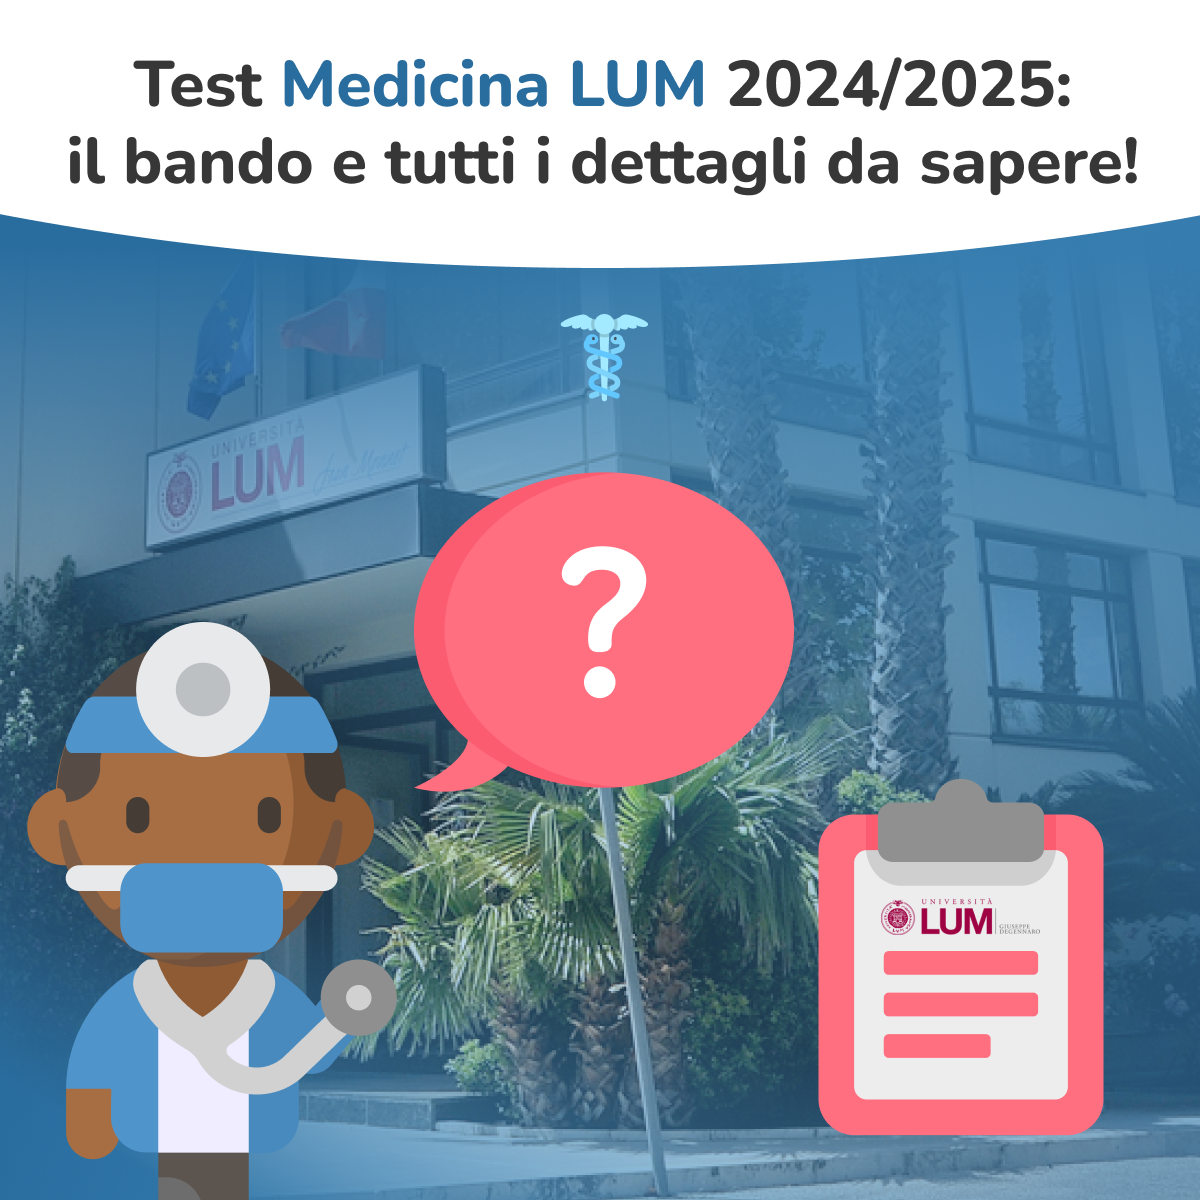 test medicina LUM 2024 2025